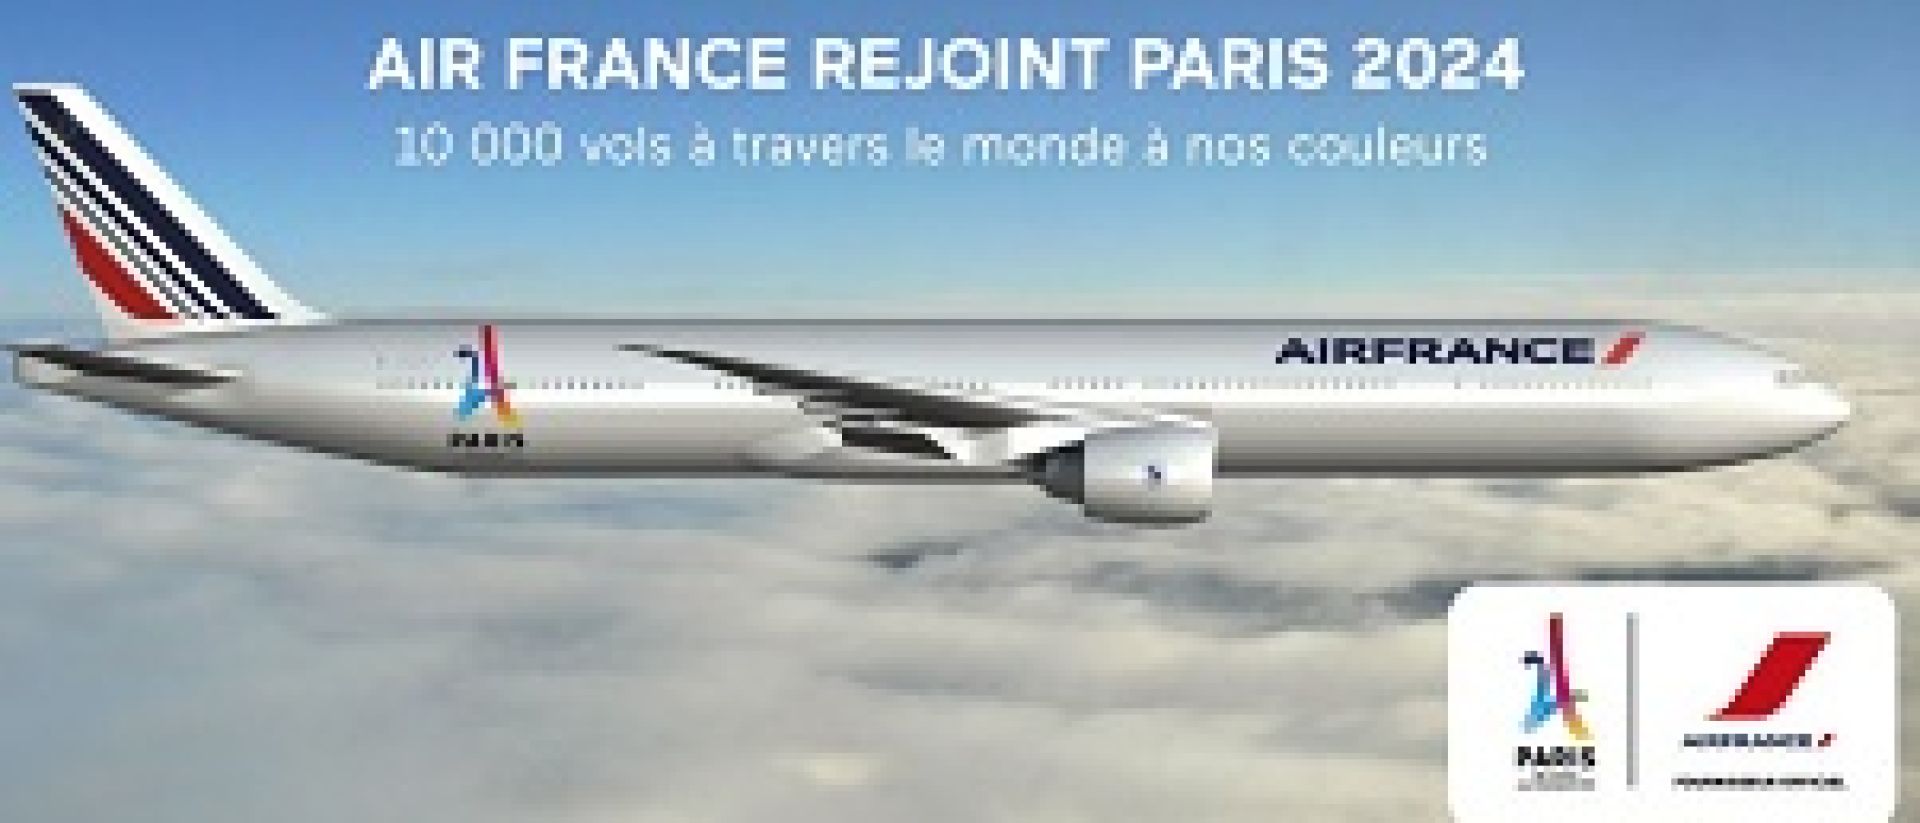 Air France con la candidatura de París 2024 Expreso